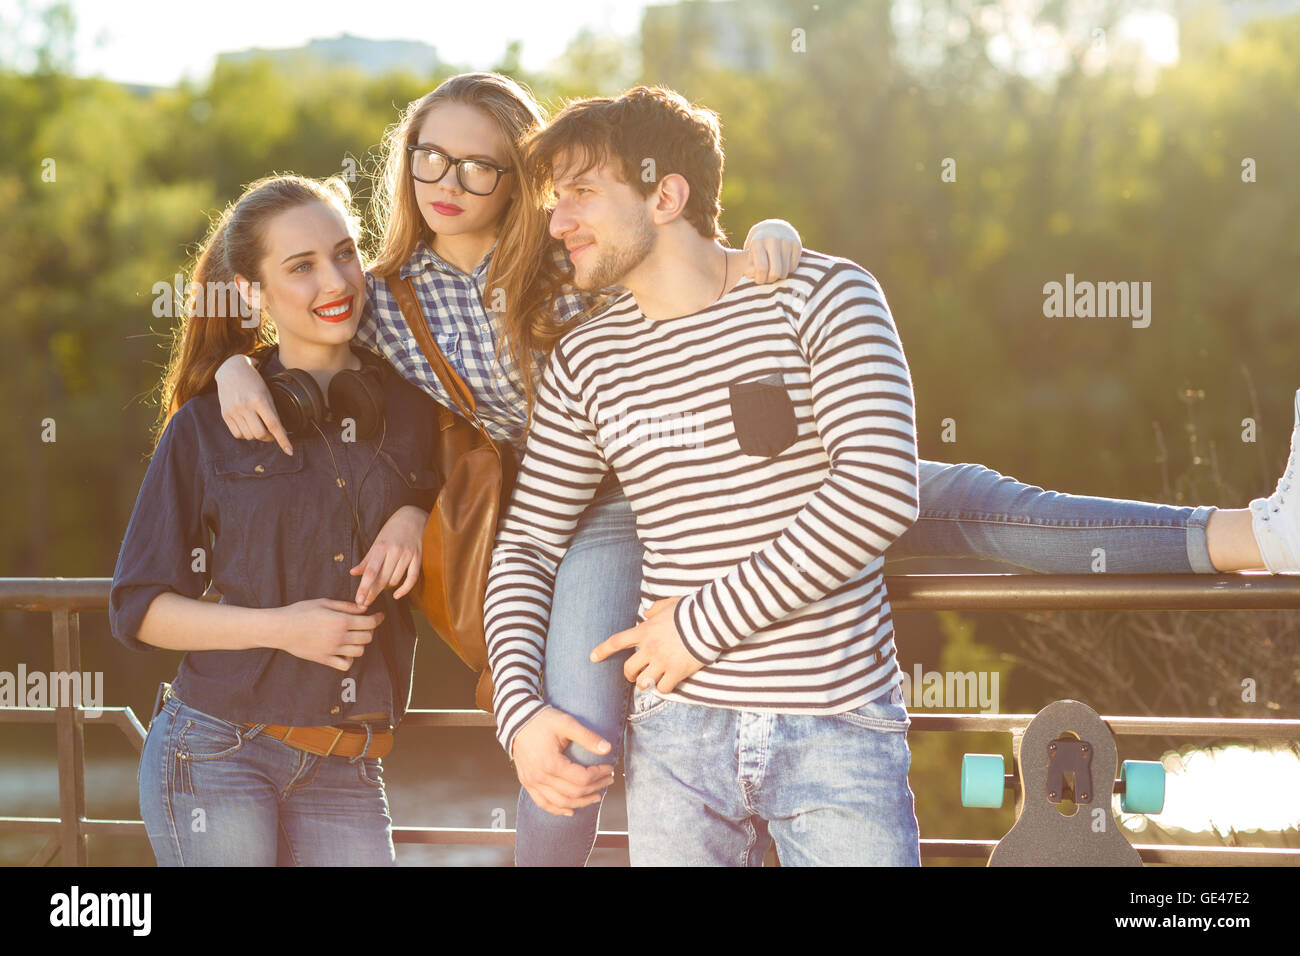 Amistad, ocio, verano, tecnología y personas concepto - sonriendo amigos divertirse al aire libre Foto de stock